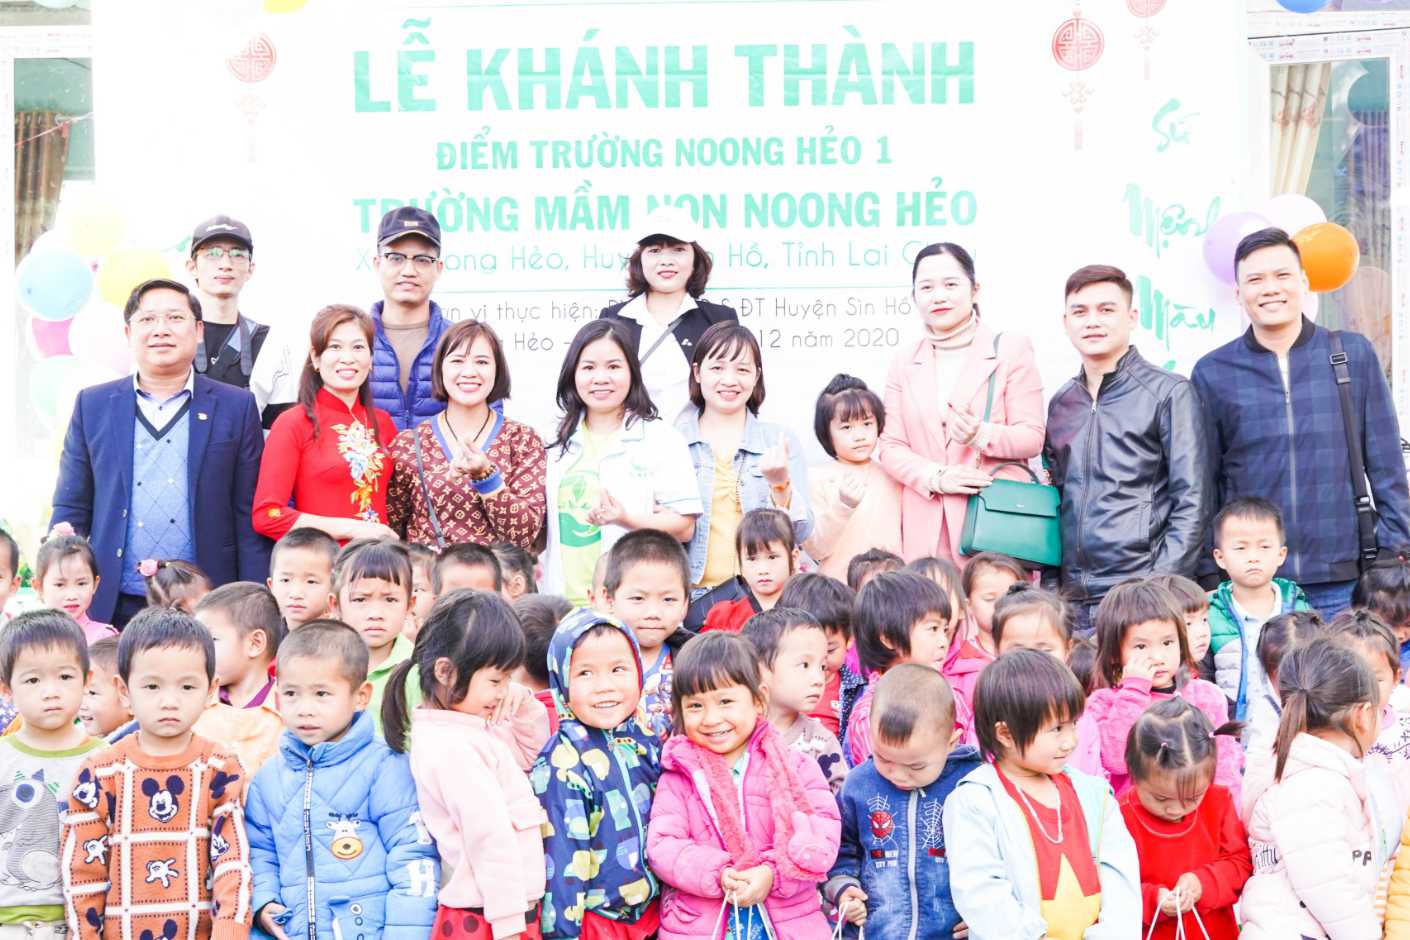 Ngày 29/12/2020, Thanh Mộc Hương kết hợp với Ban giám hiệu trường mầm non Noong Hẻo 1, Sìn Hồ, Lai Châu. Long trọng tổ chức cắt băng khánh thành trường mới cho các em nhỏ nơi đây.